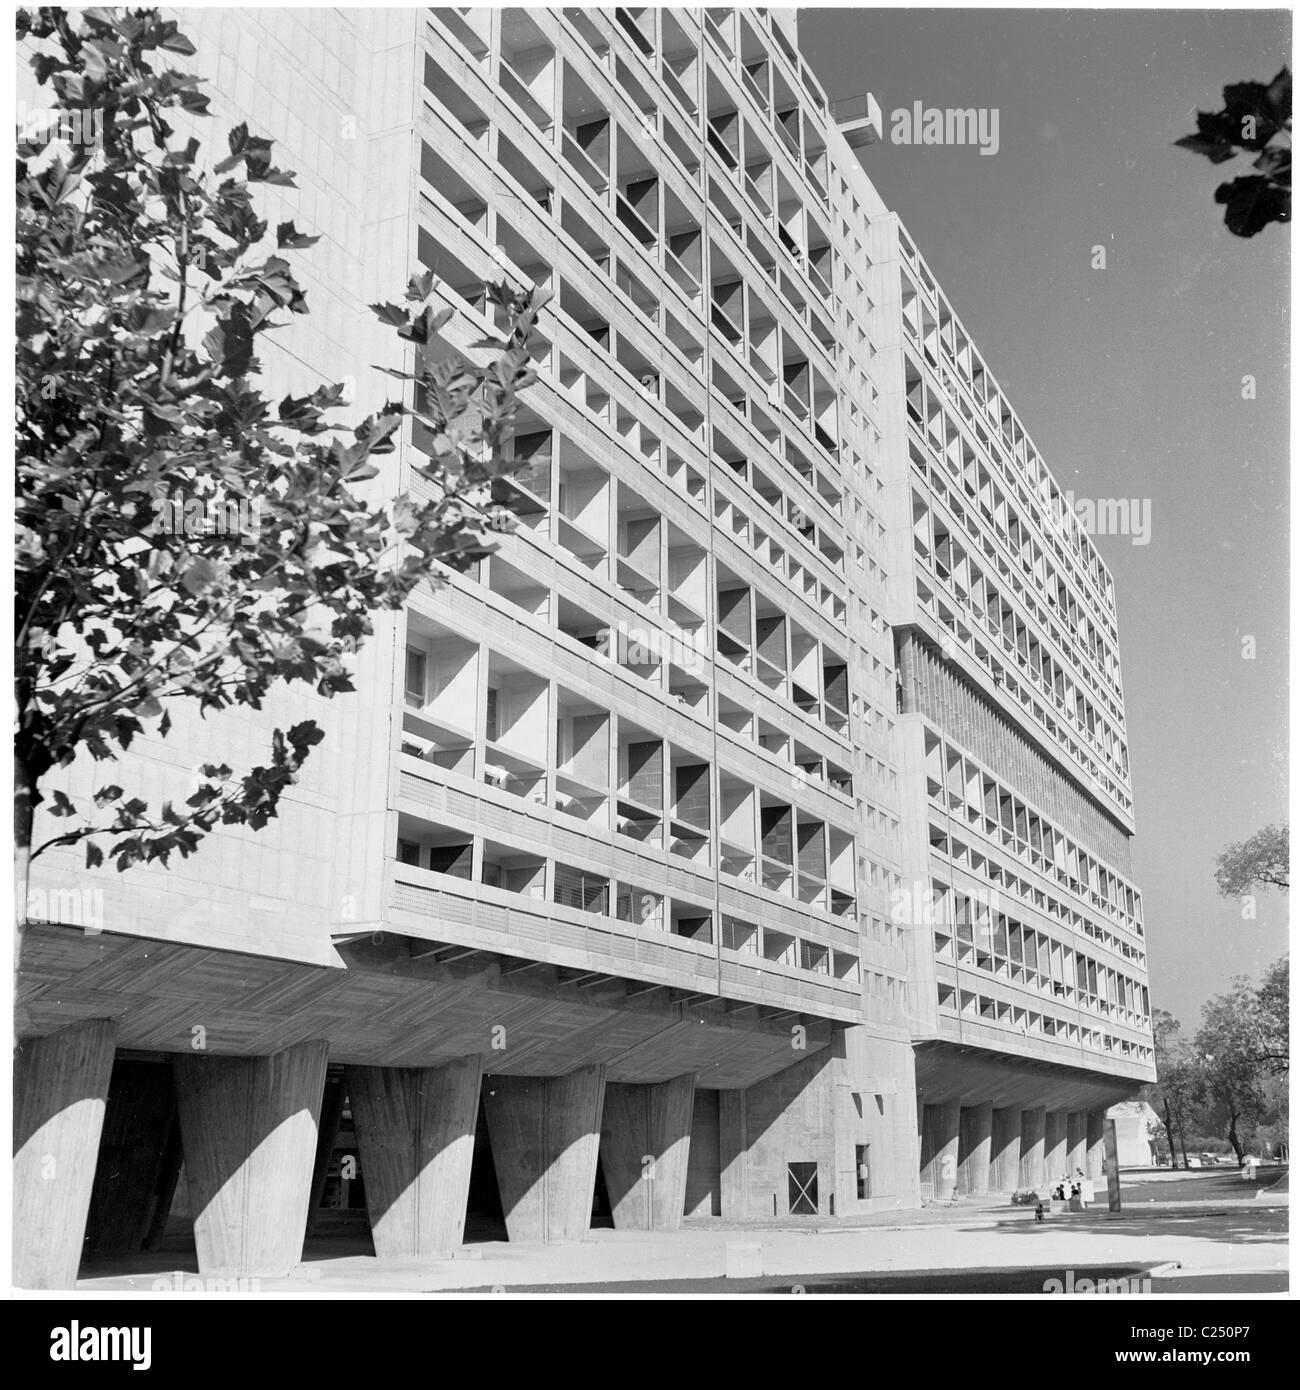 1952, Außenansicht des Unite d' Habitation oder Corbusier Building in Marseille, Frankreich, einer neuen Hochhaussiedlung, bekannt als Brutalismus. Stockfoto